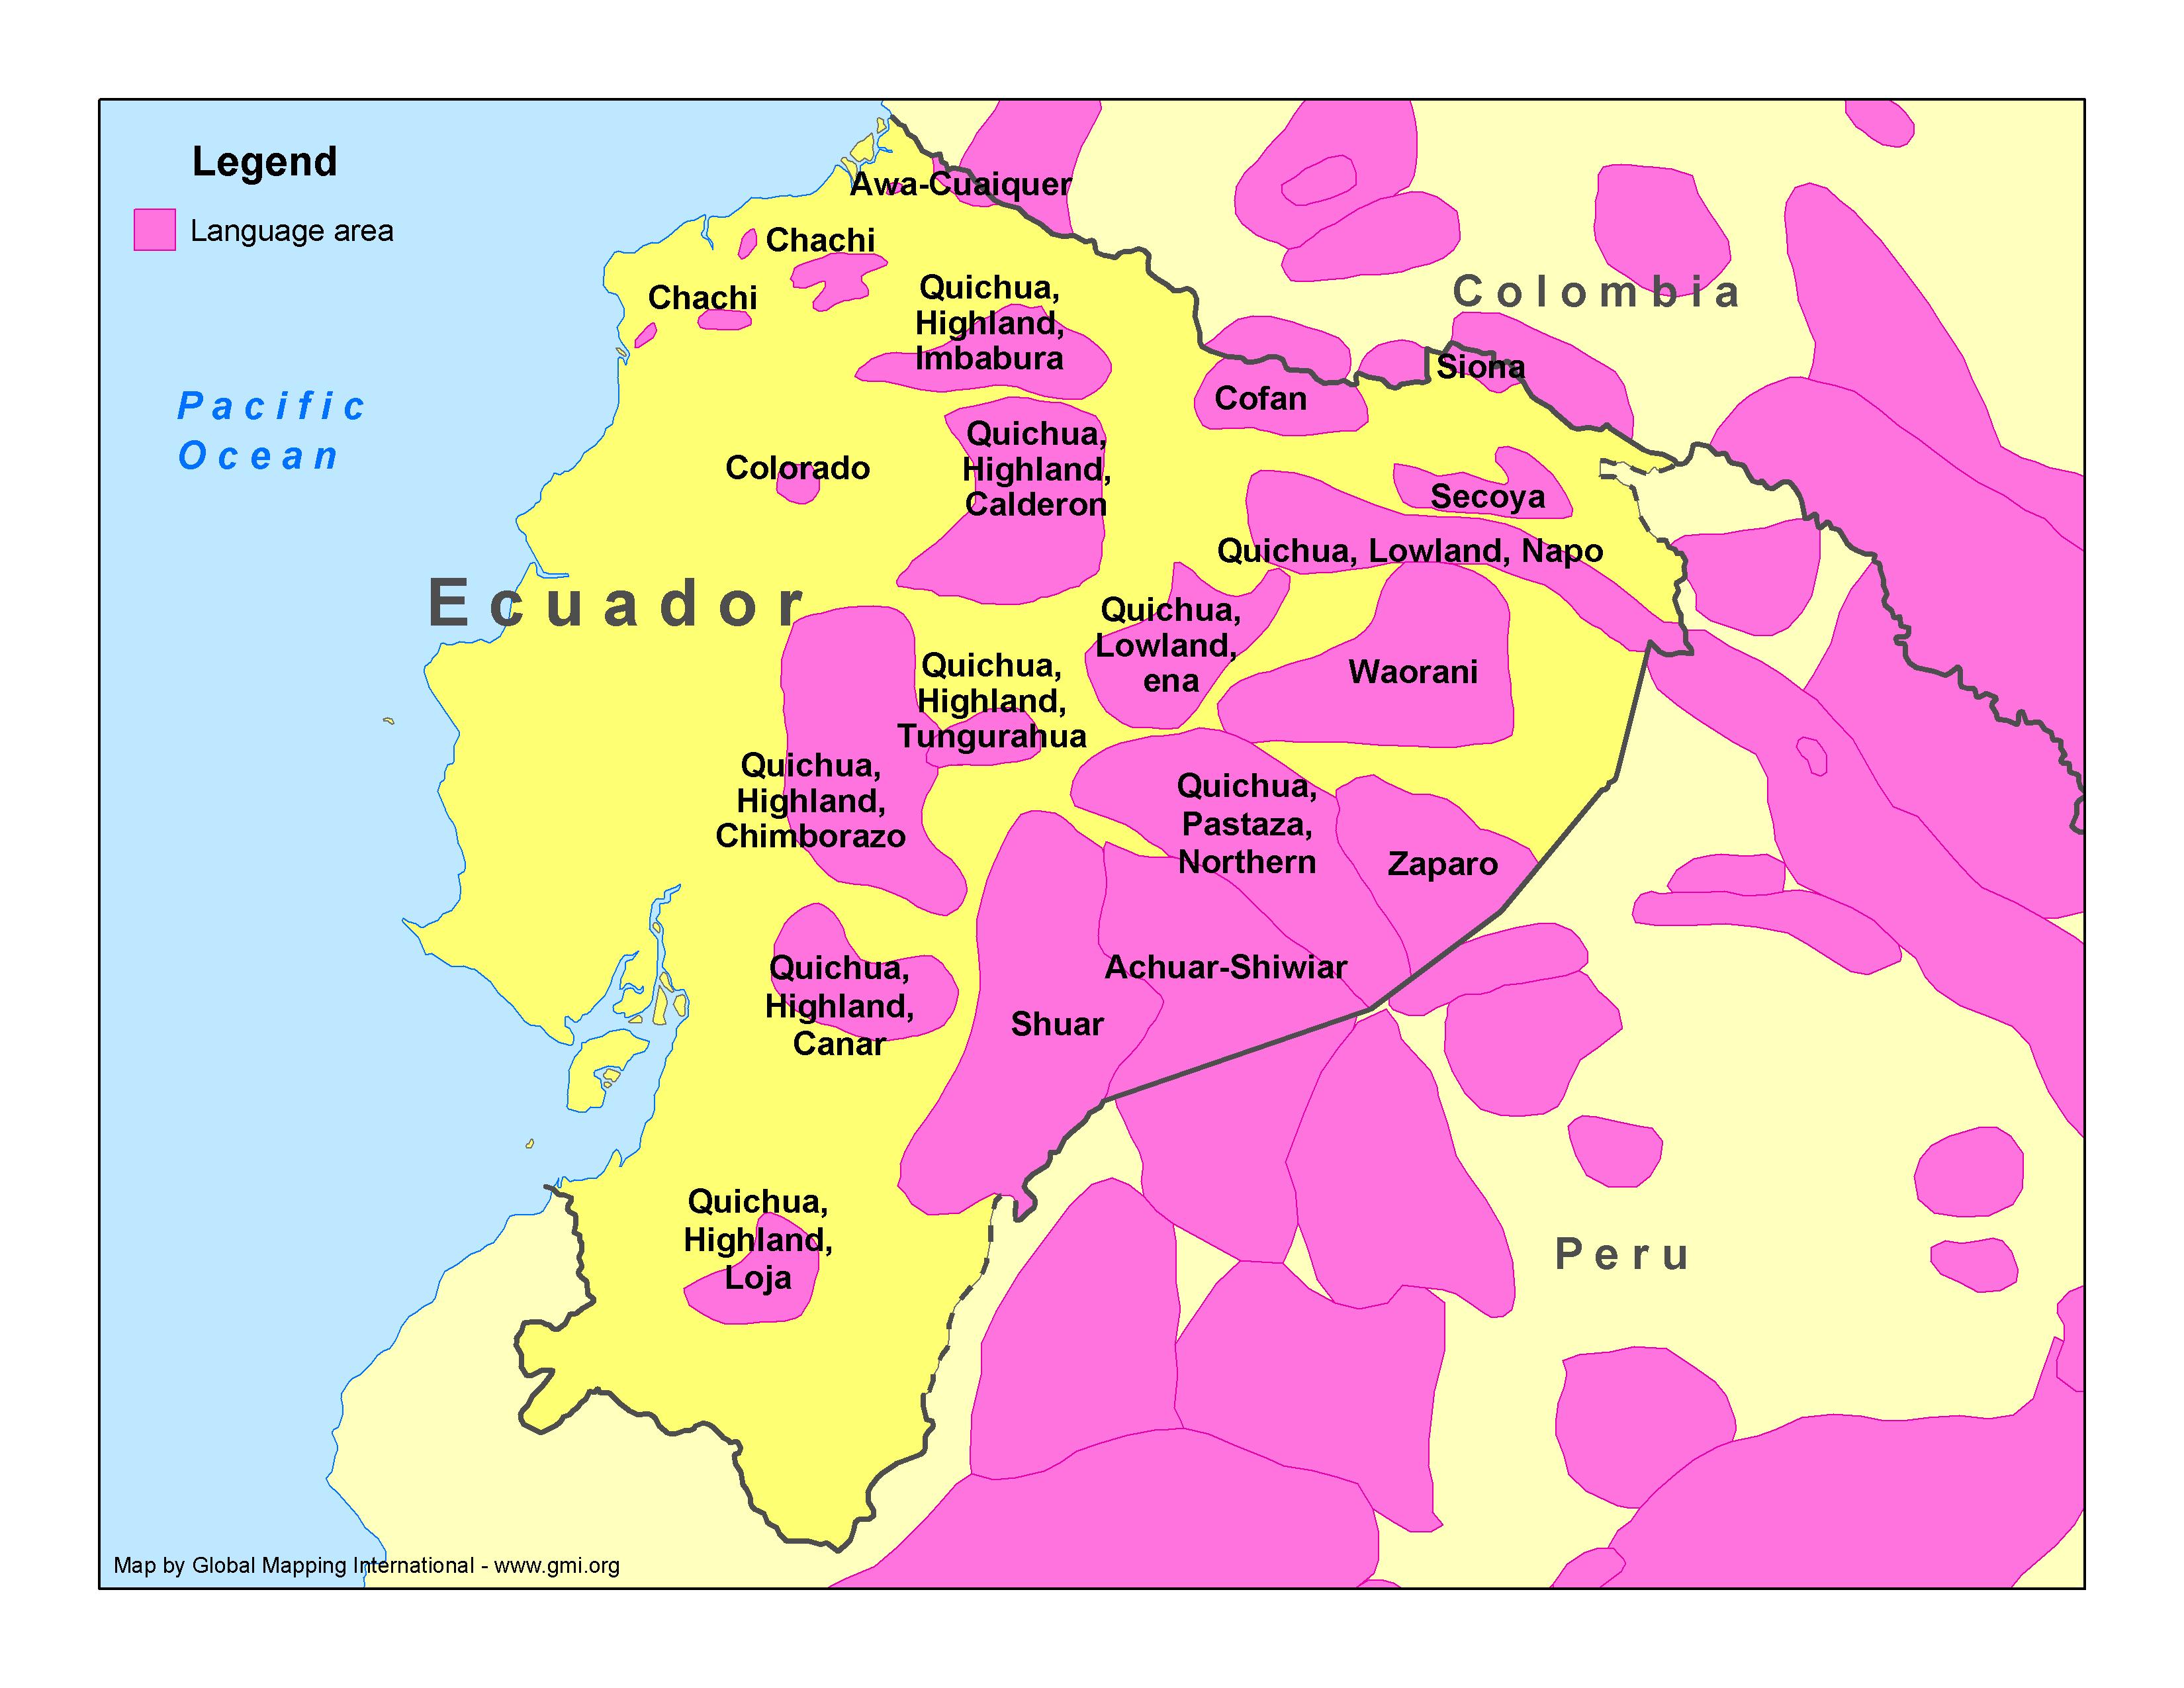 Language Areas of Equador